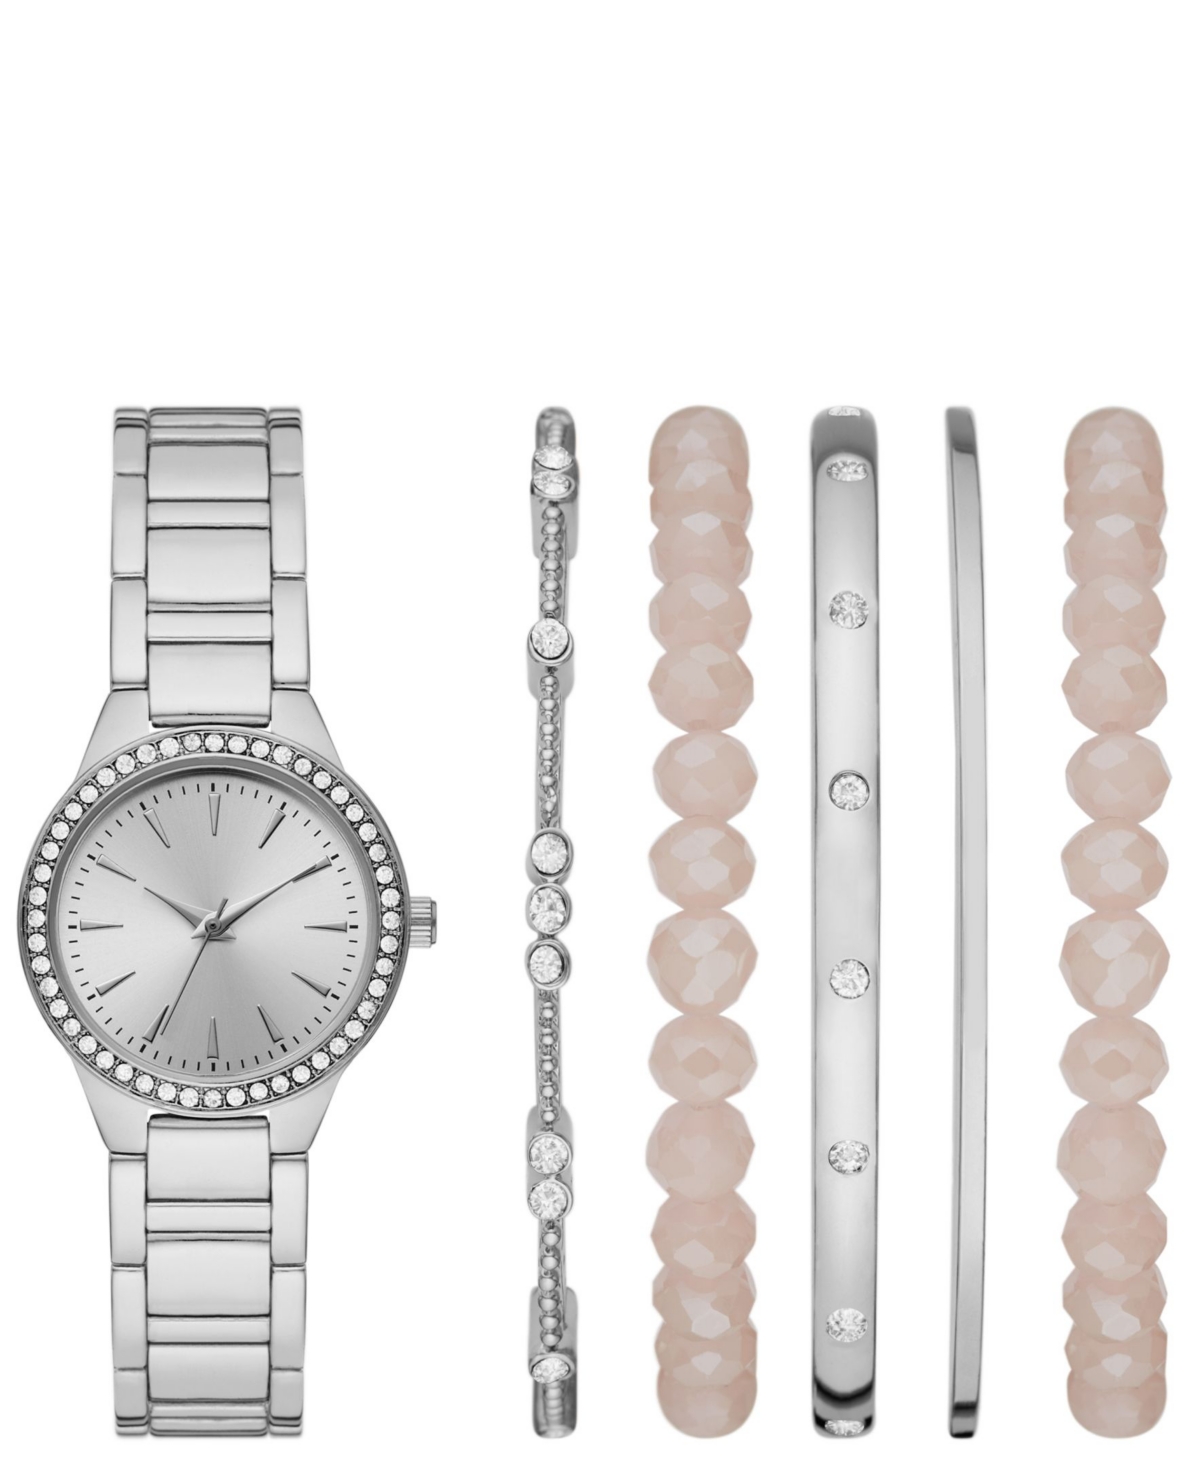 Folio Women's Silver Bracelet Watch Gift Set, 30mm